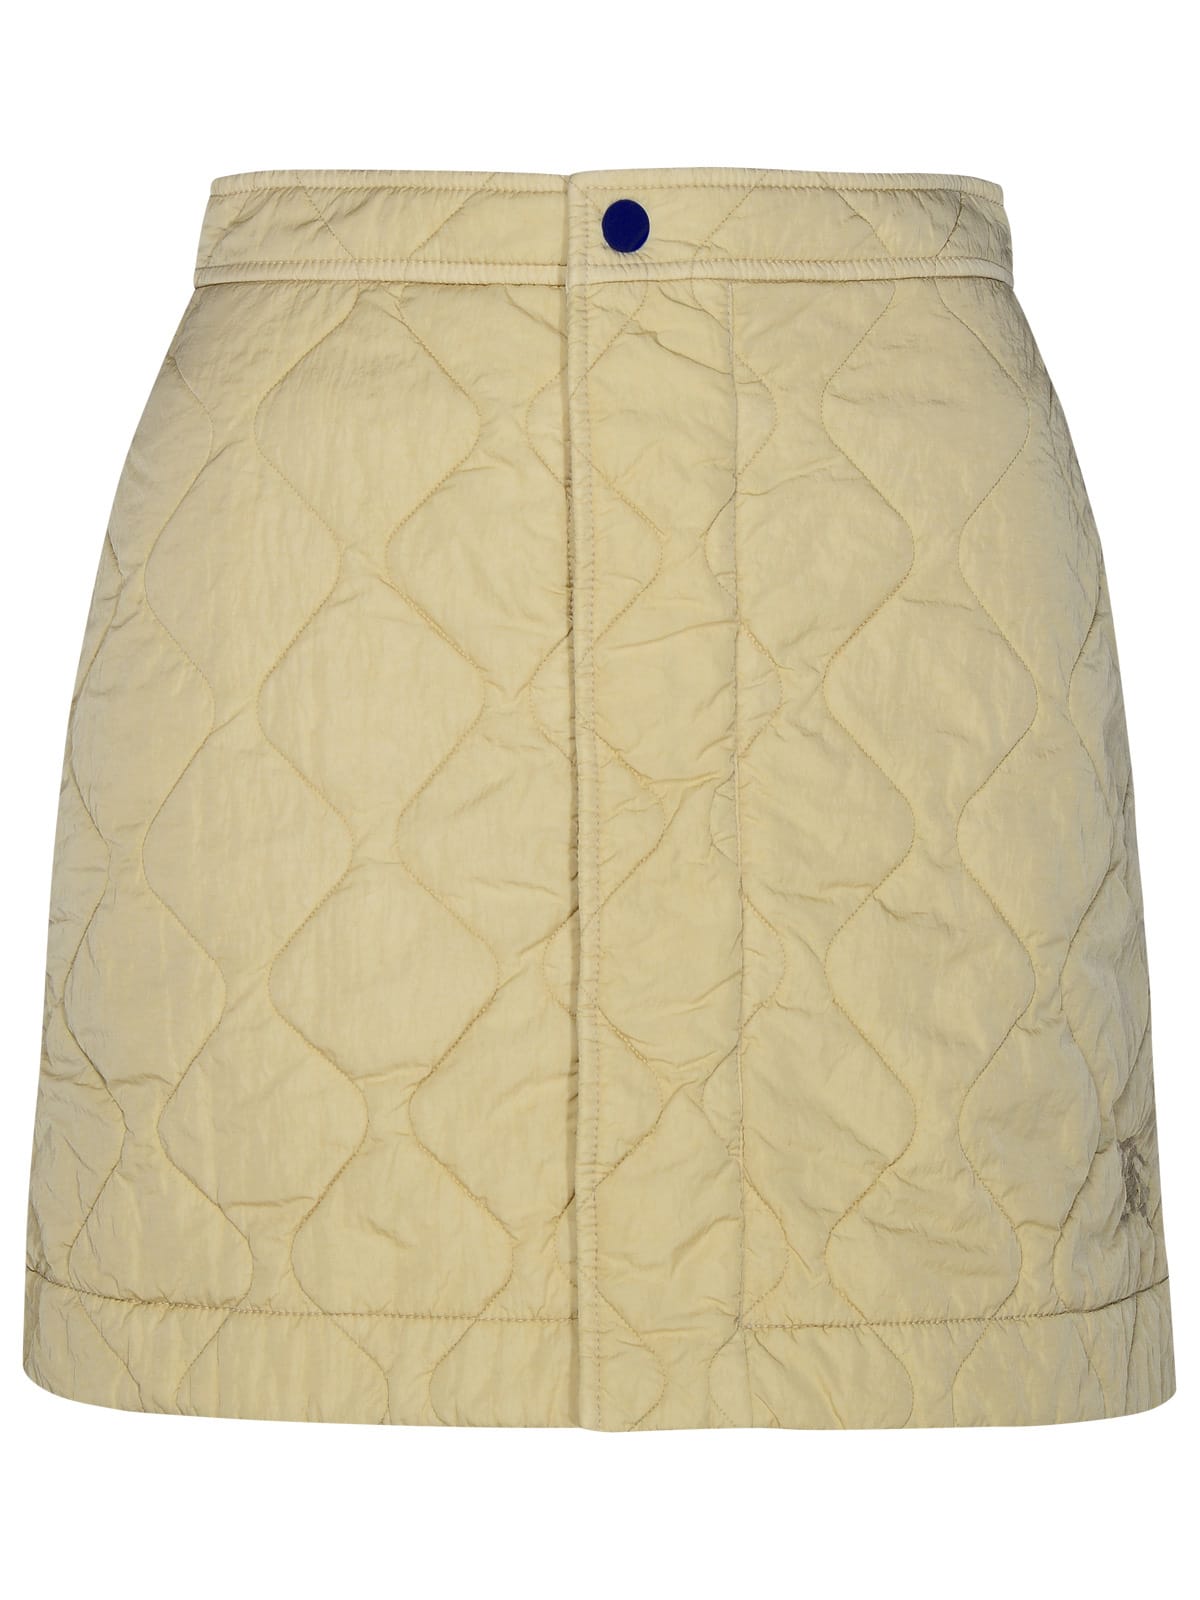 Burberry Beige Nylon Miniskirt